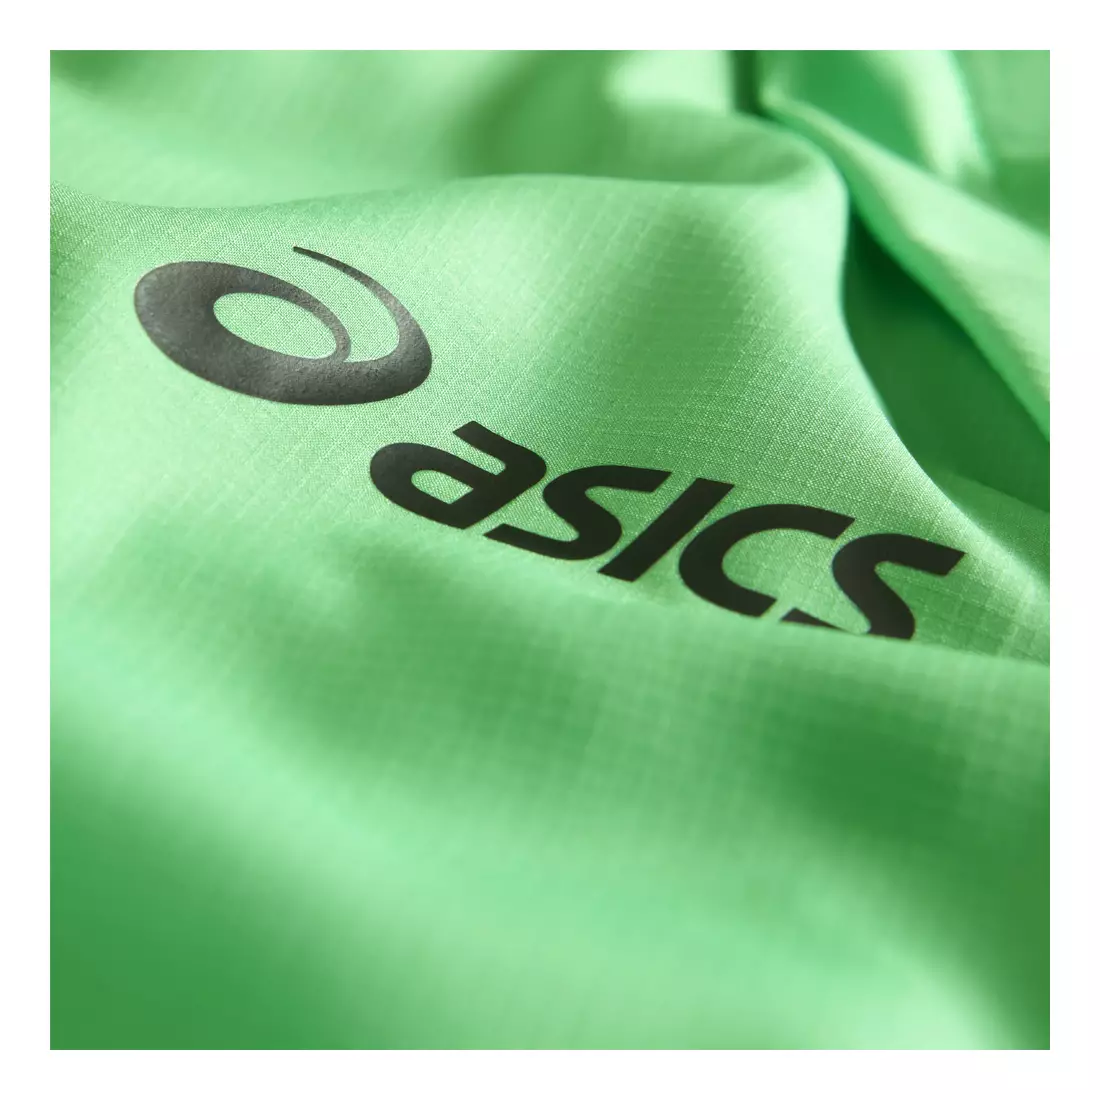 JACĂ CONVERTIBILĂ ASICS 110514-0498 - jacket de alergare pentru bărbați, mâneci detașabile - culoare: verde